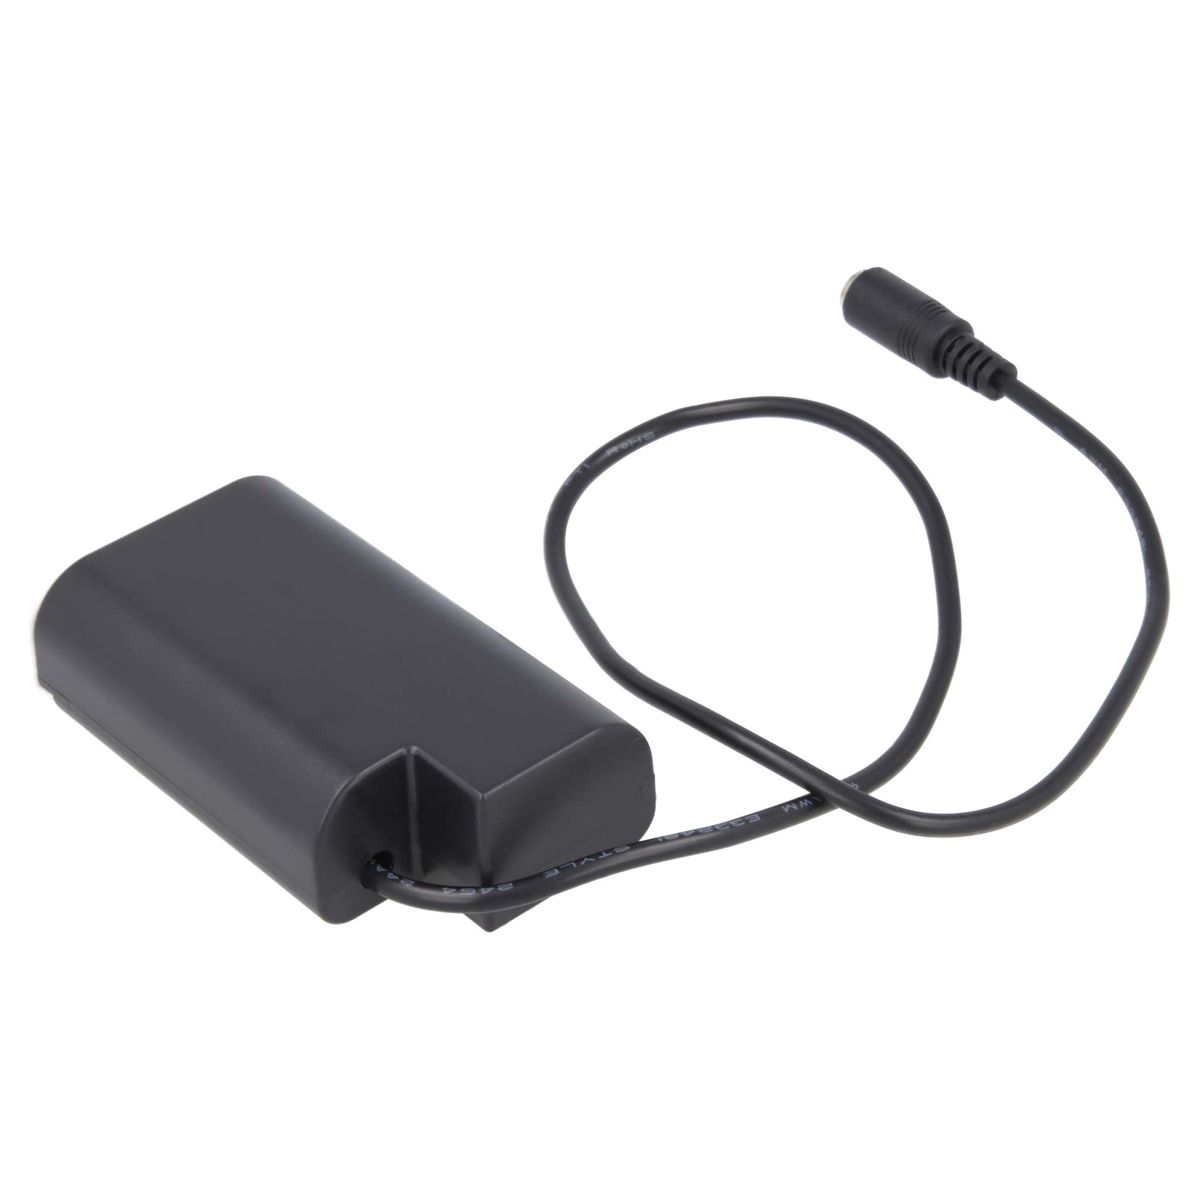 AKKU-KING USB Adapter + Kuppler DCC16 kompatibel Panasonic, Panasonic mit Angabe Ladegerät keine